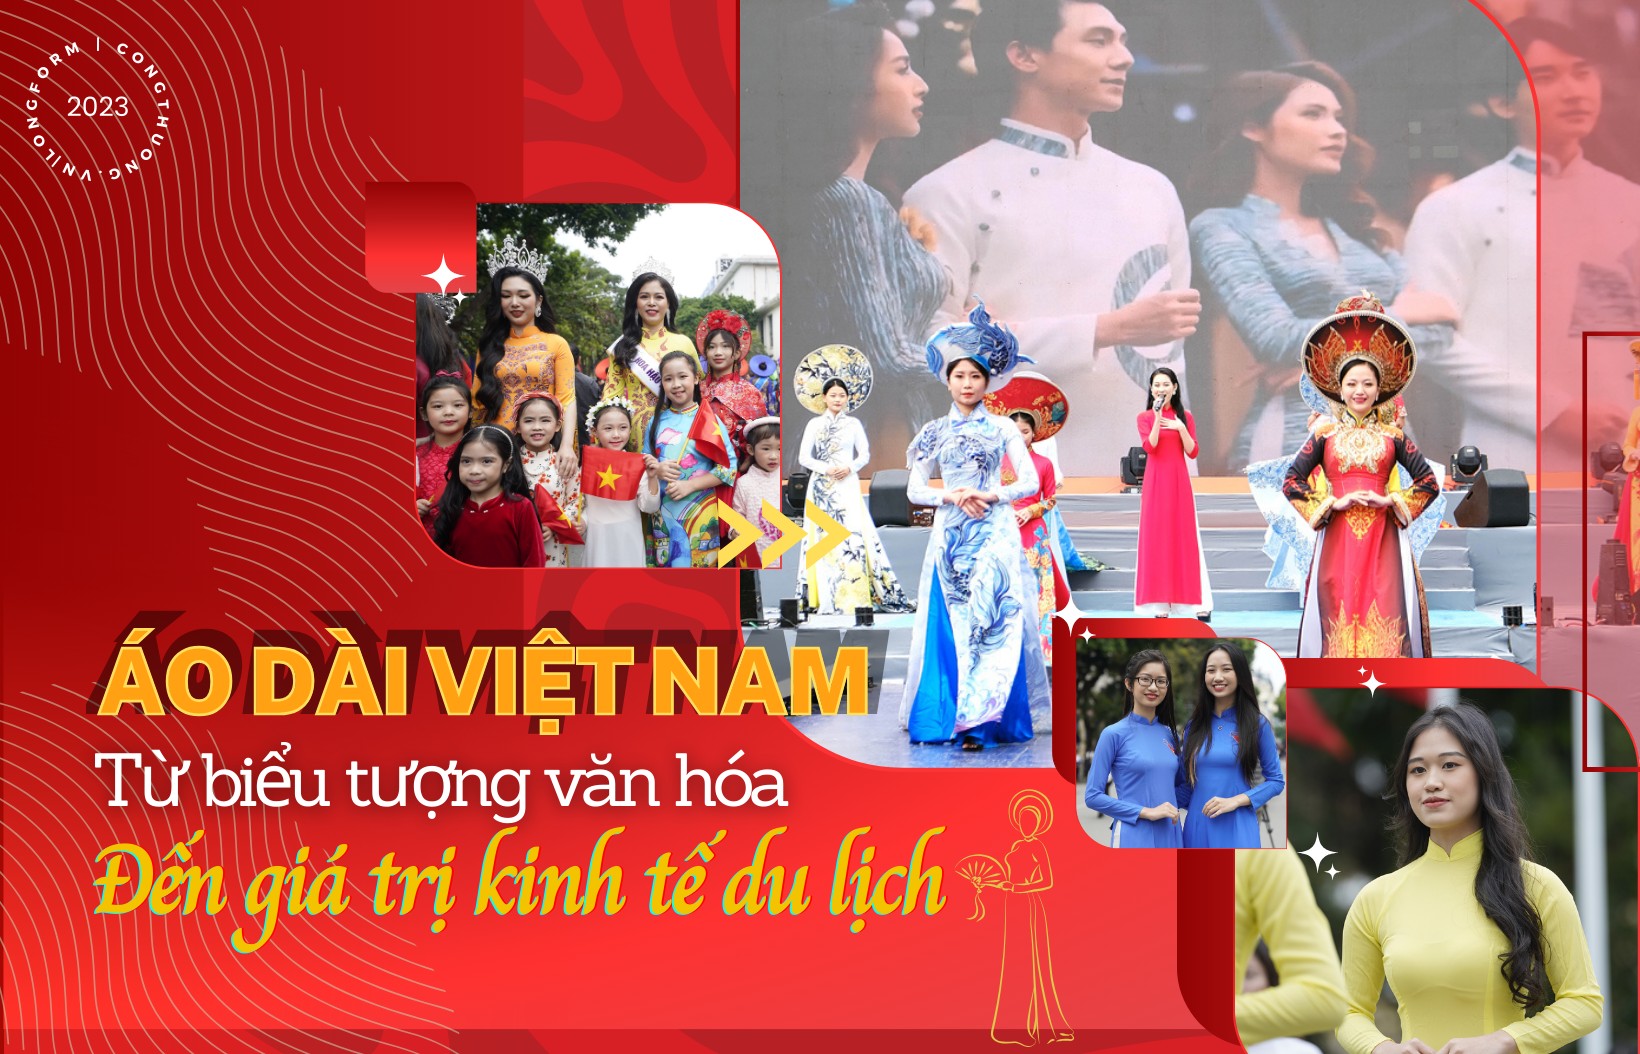 Longform | Áo dài Việt Nam: Từ biểu tượng văn hoá đến giá trị kinh tế du lịch